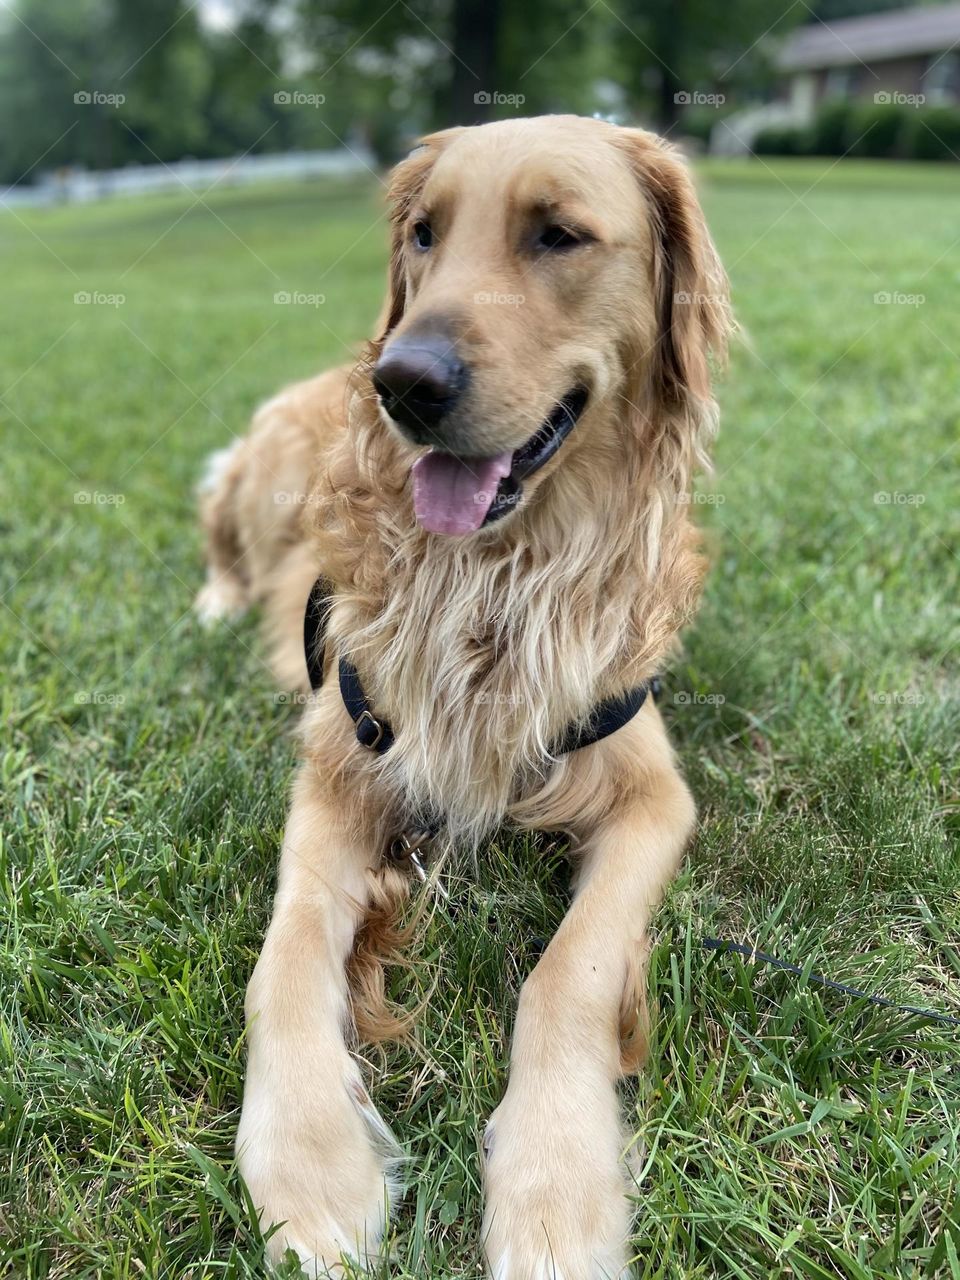 Golden retriever dog in grass